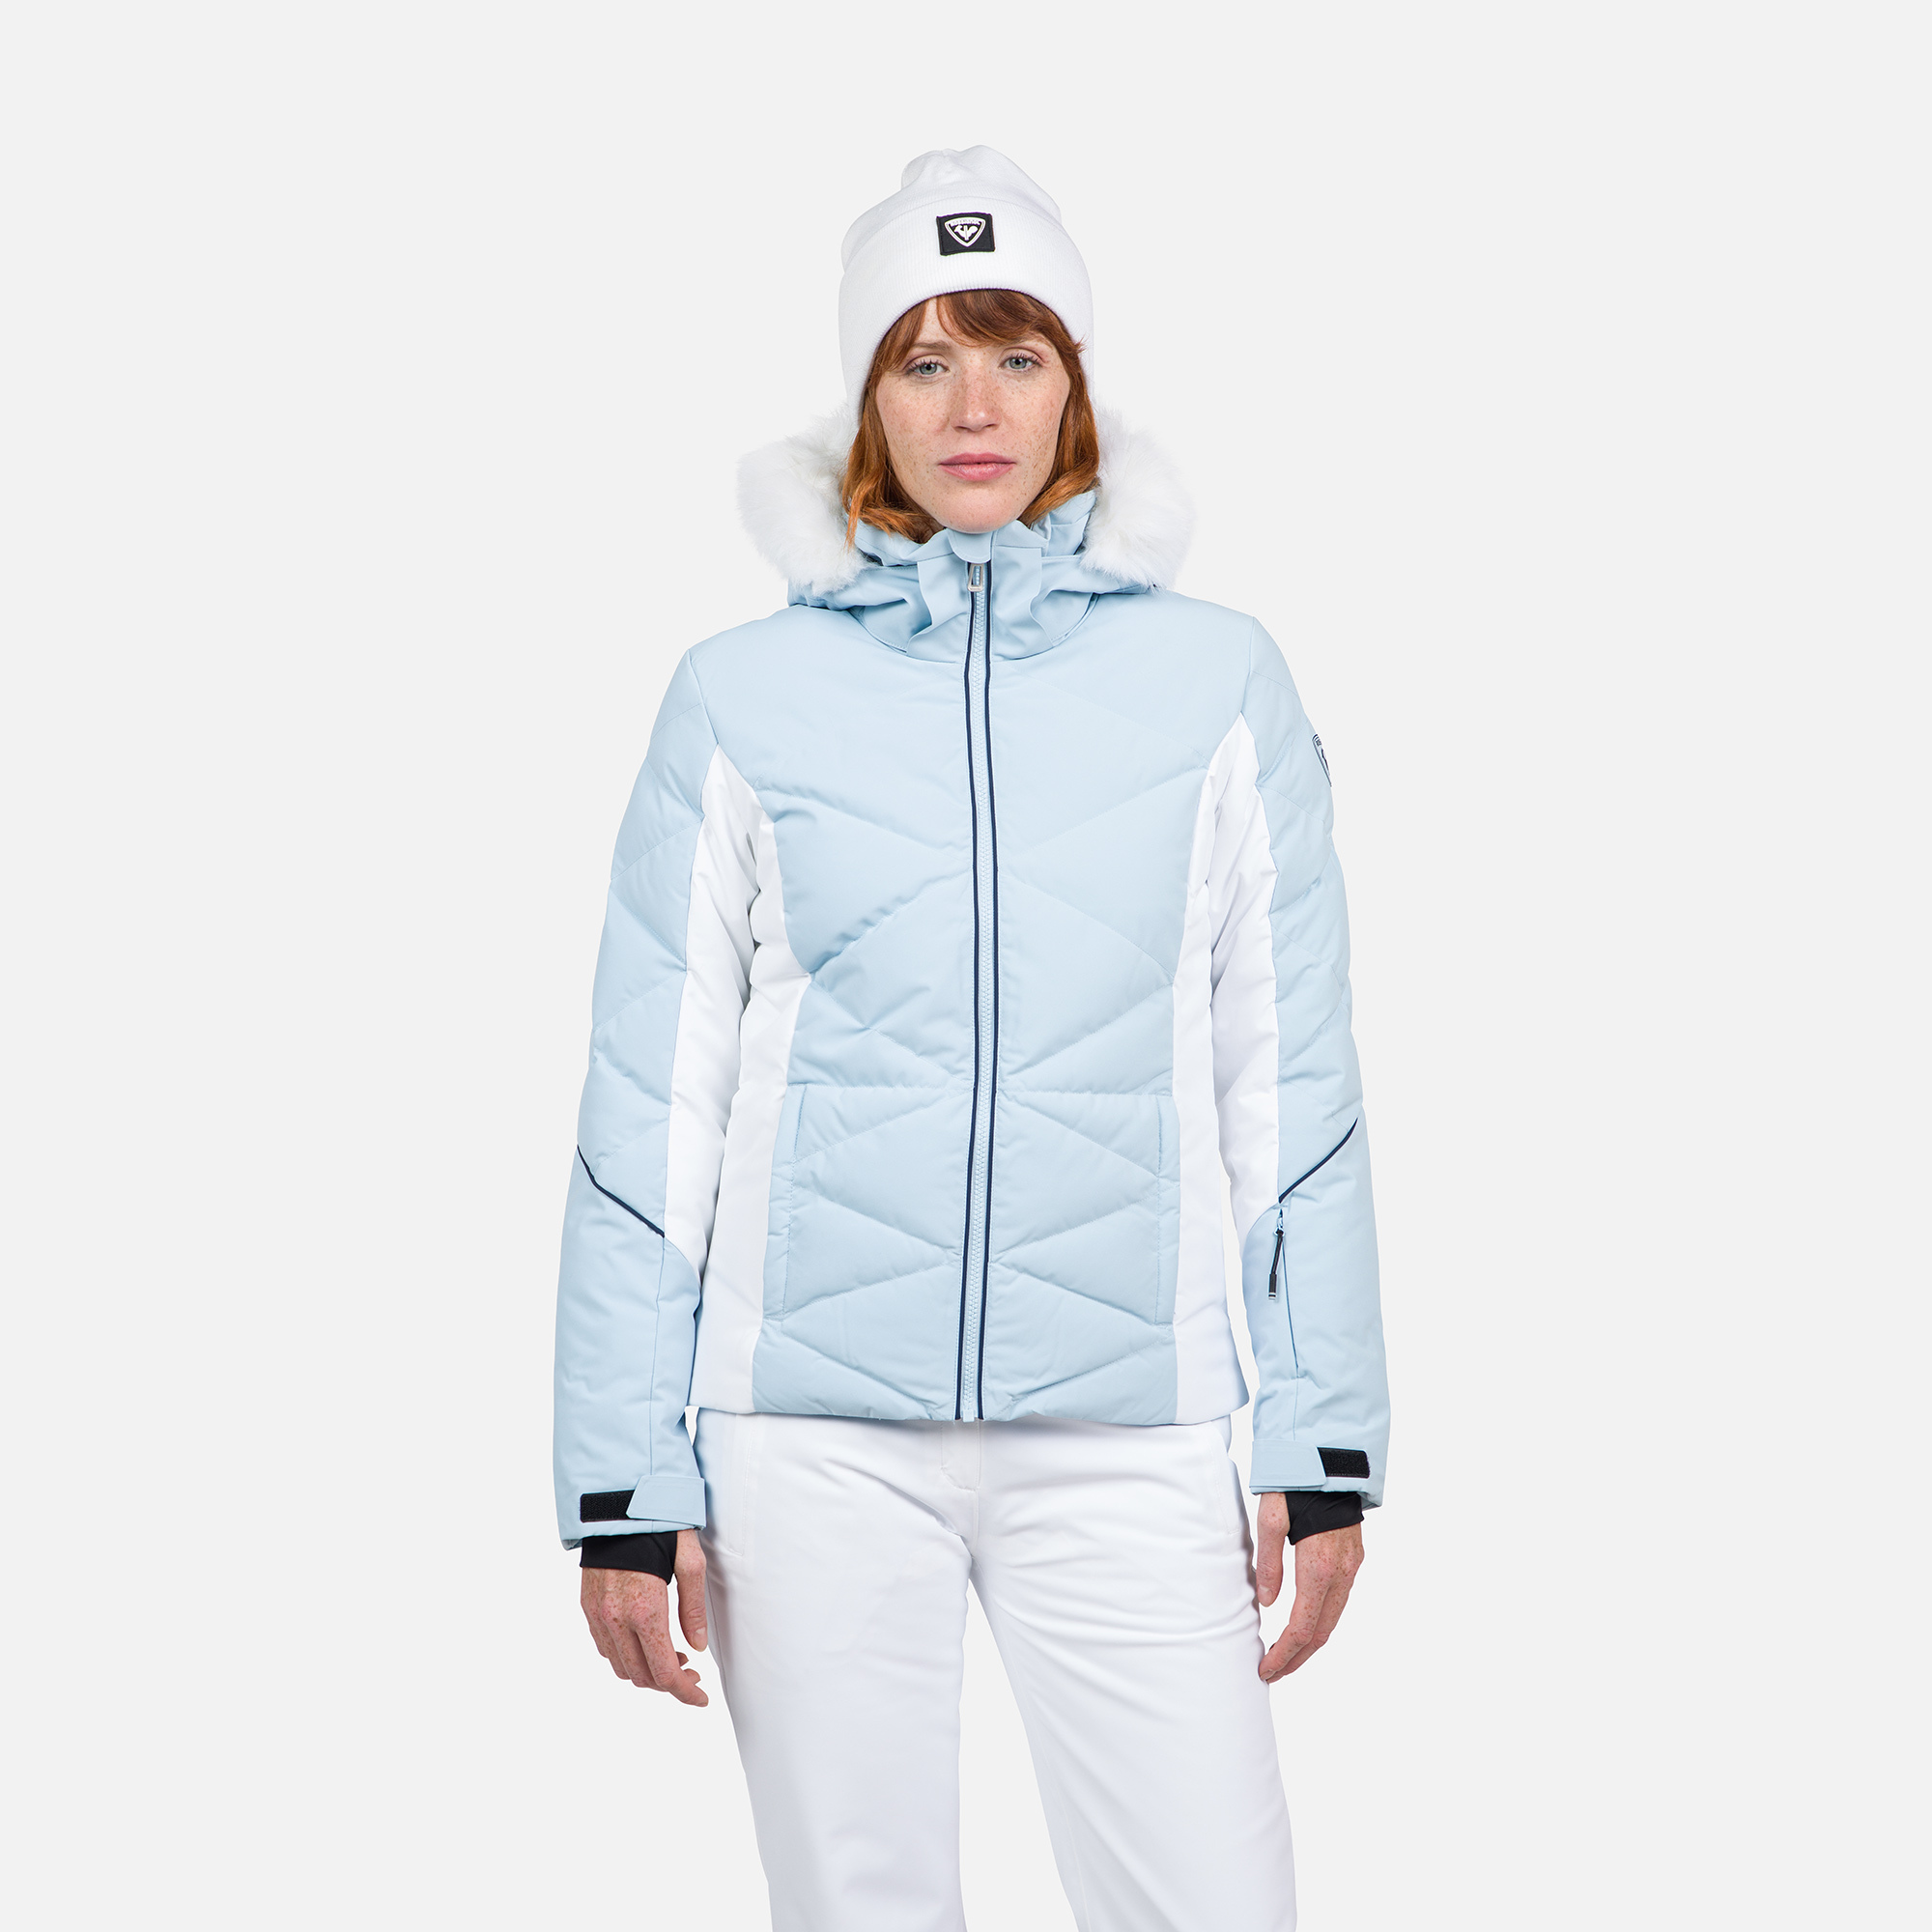 Women's Staci Ski Jacket